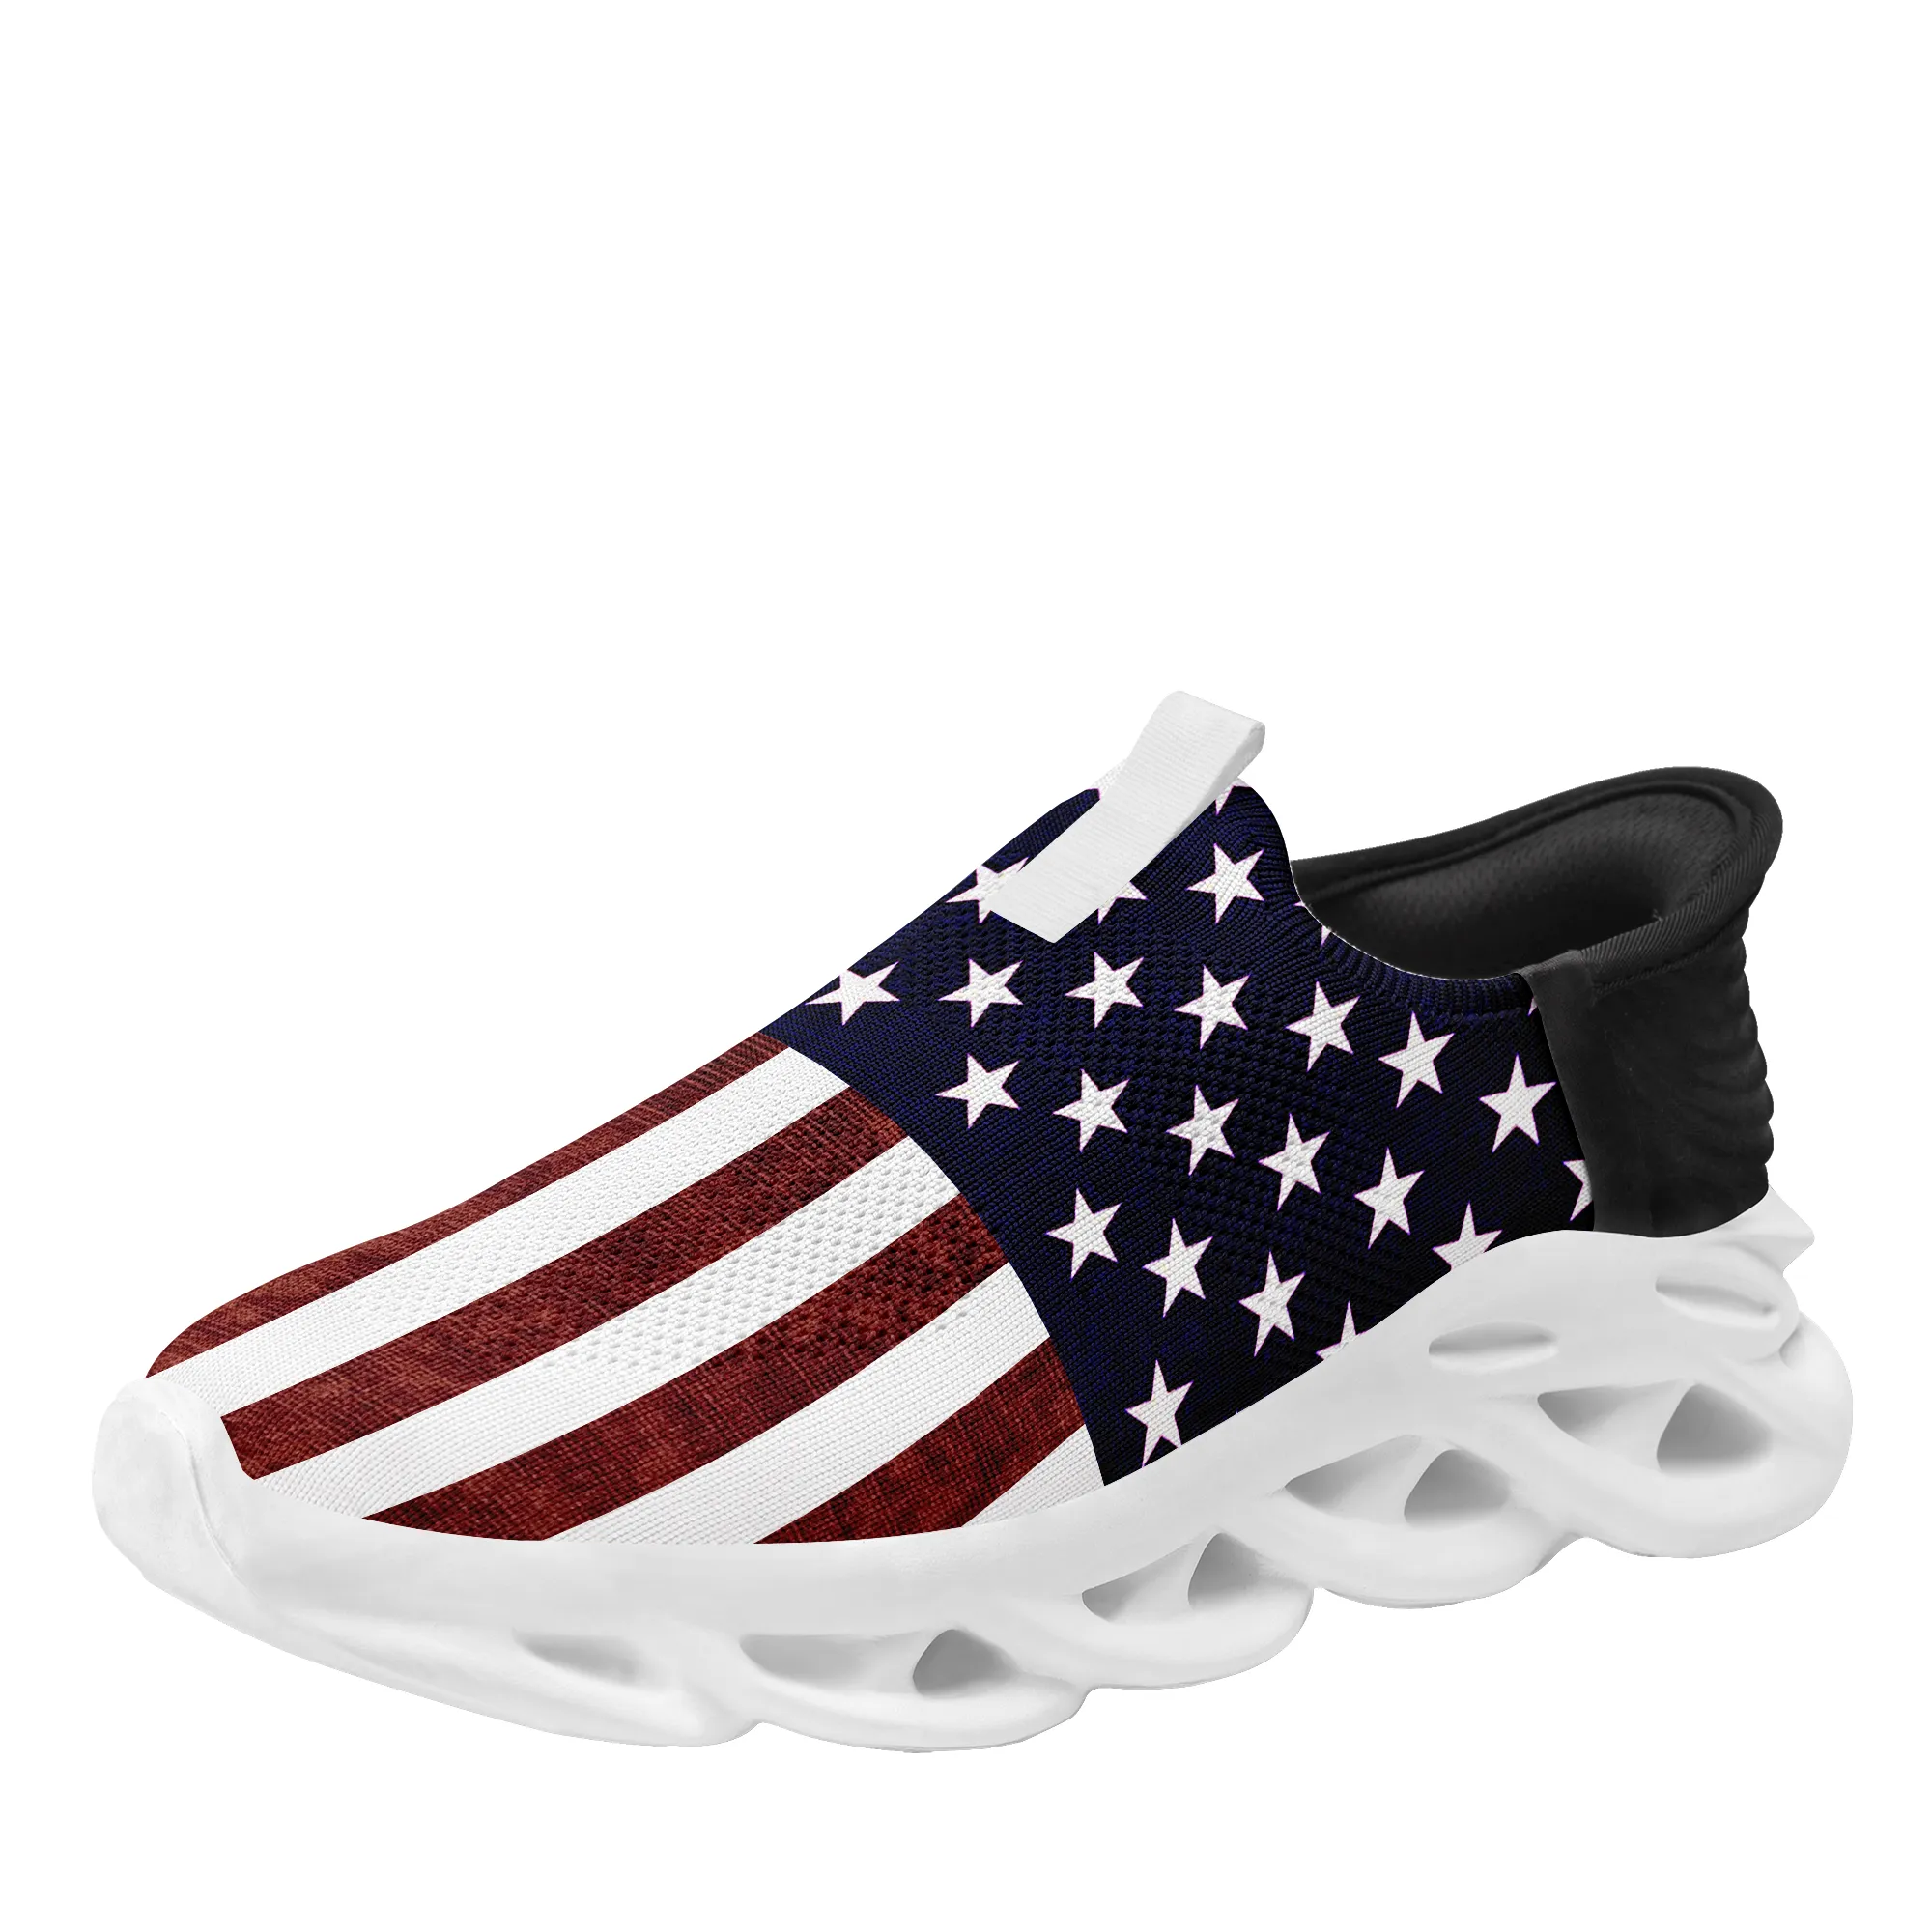 Coolcustomize Custom USA drapeau national étoile unisexe sneaker personnalisé américain patriotique sans lacet léger course tennis MS marche hommes femmes chaussures de sport